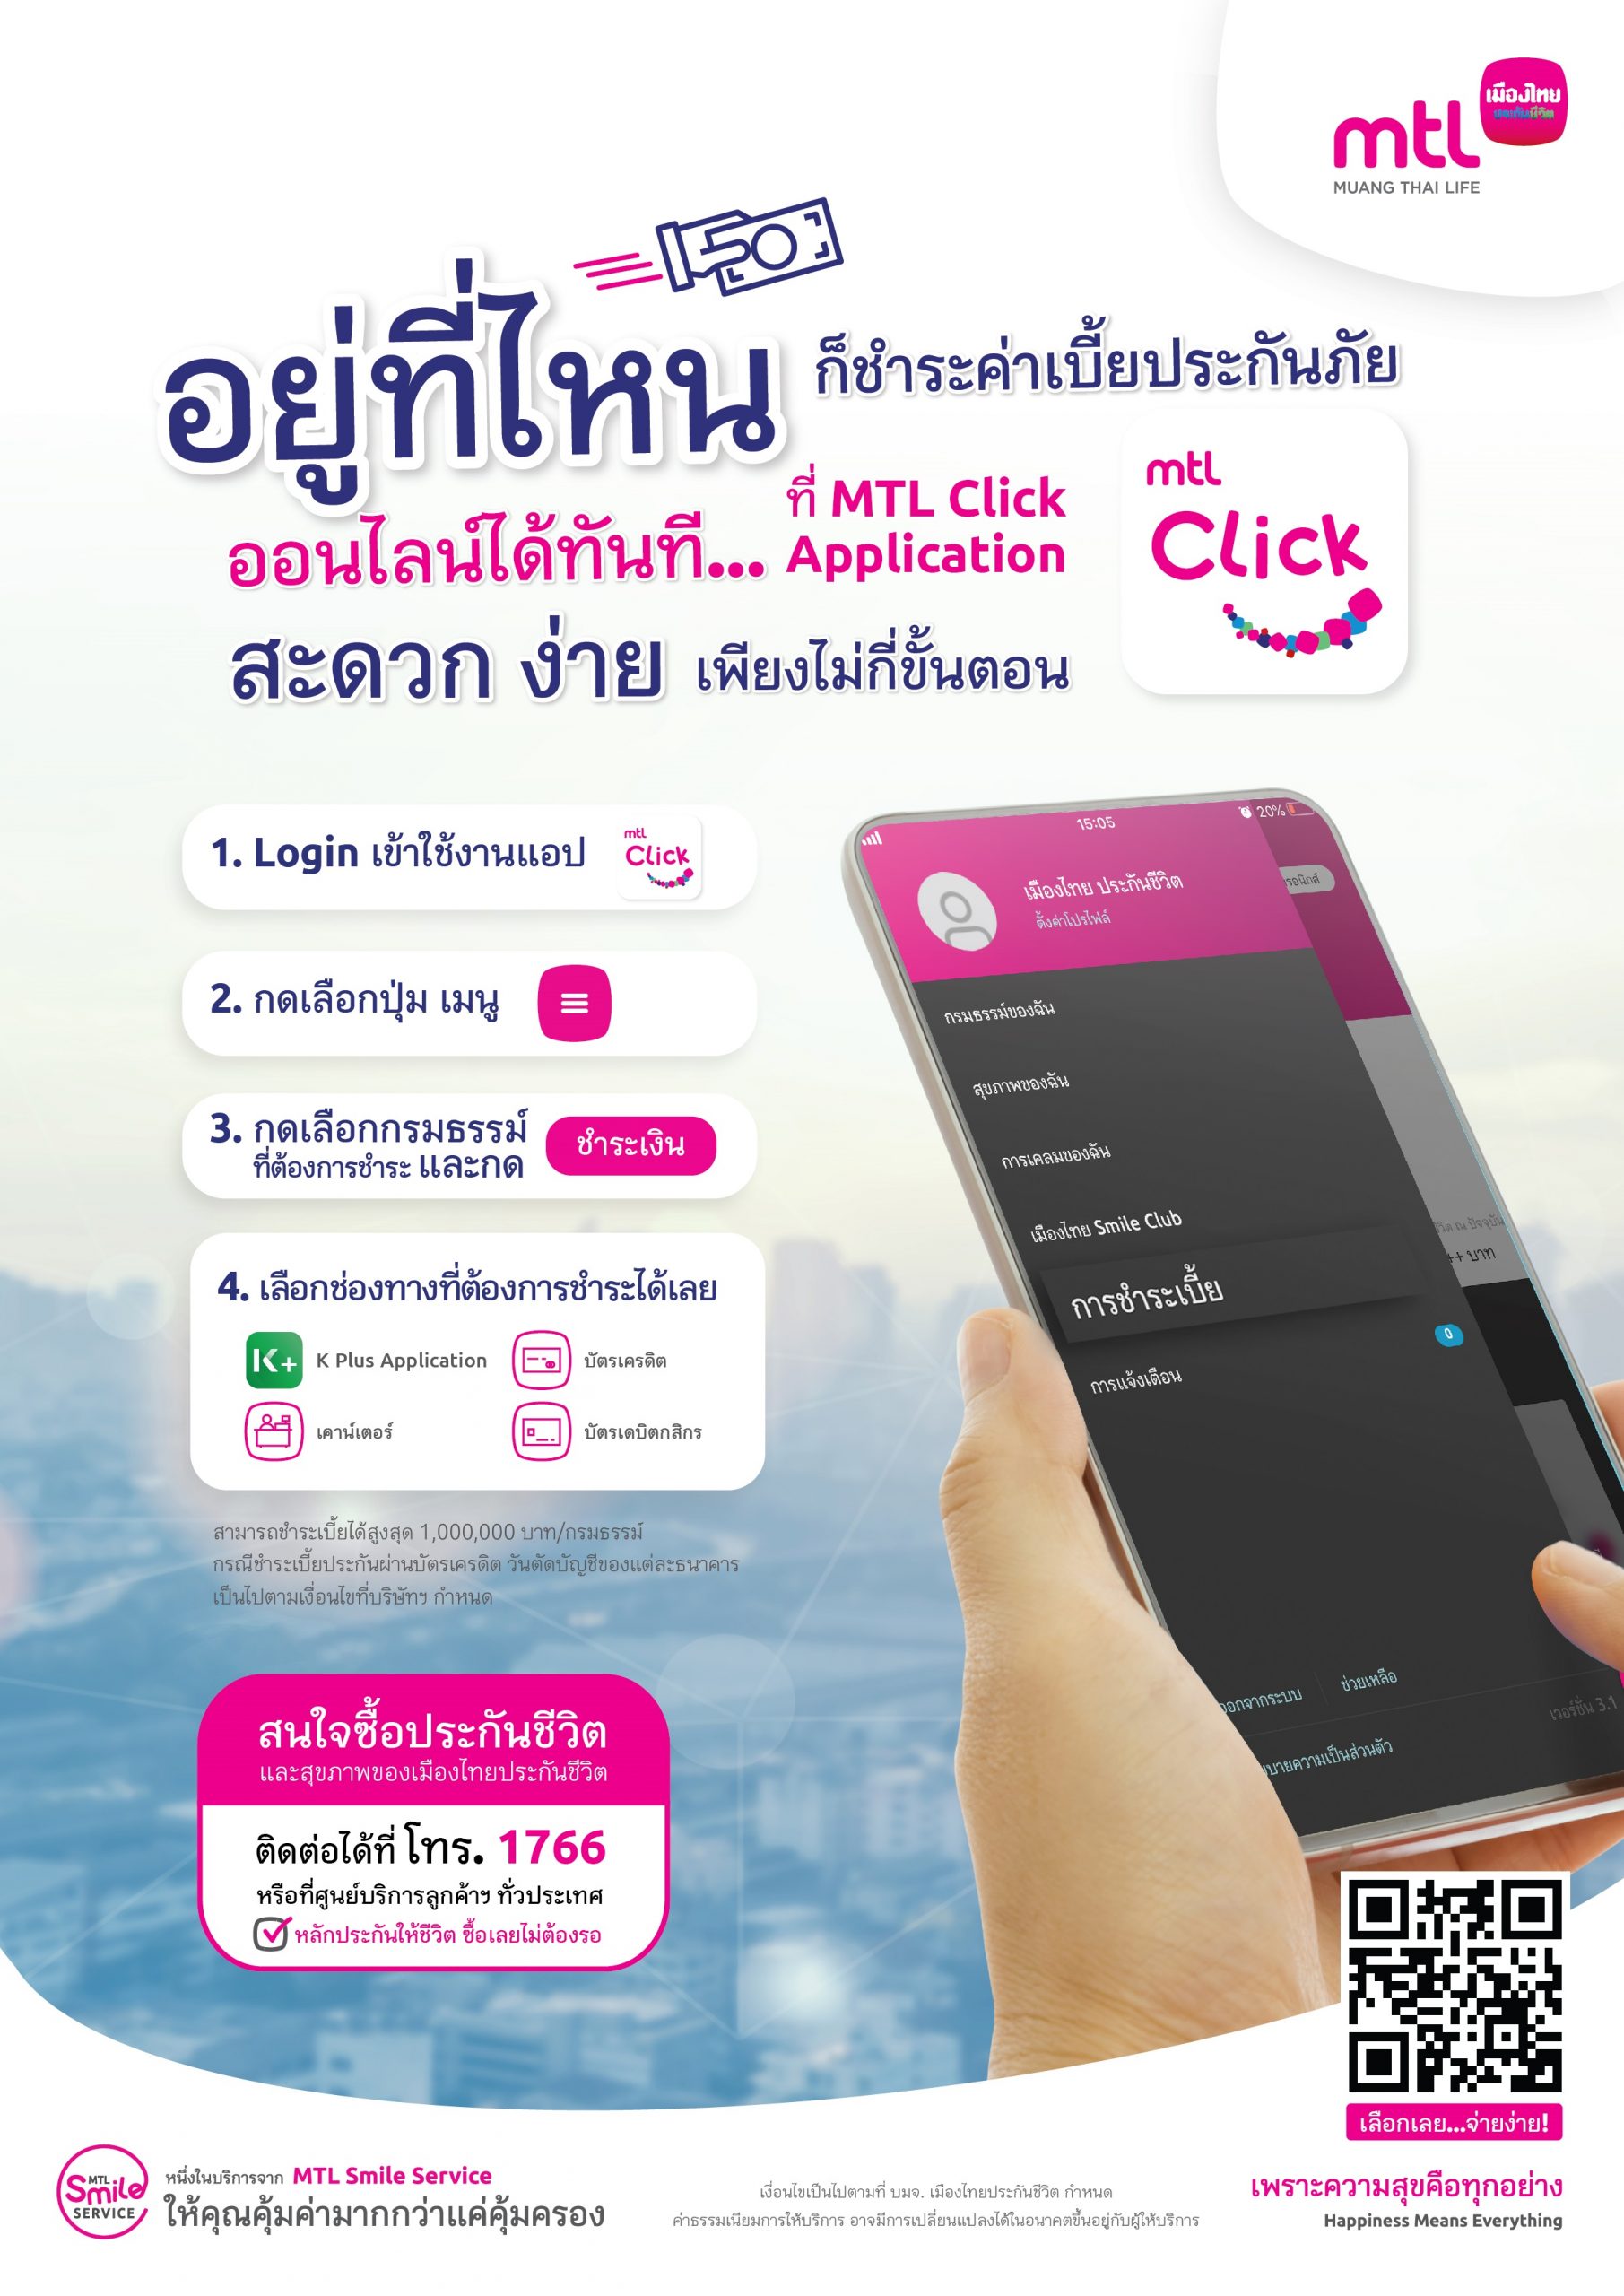 เมืองไทยประกันชีวิต ยกระดับบริการชำระเบี้ยประกันภัย ออนไลน์ ผ่านแอป MTL Click พร้อมสร้างความเชื่อมั่นให้แก่ลูกค้าในทุกสถานการณ์